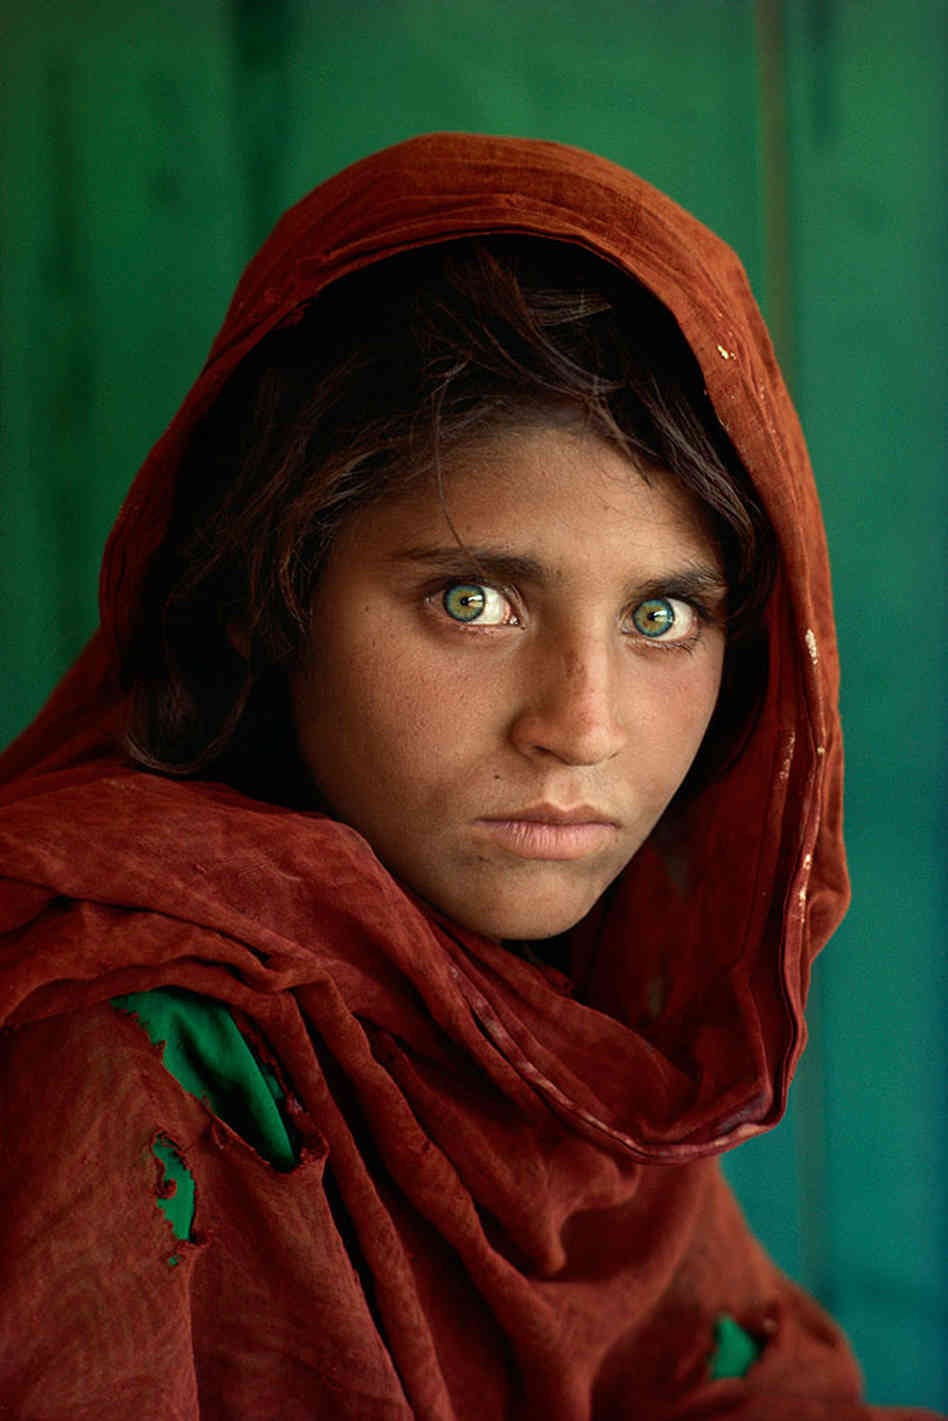 Afghan Girl 1984, shot on Nikon FM2